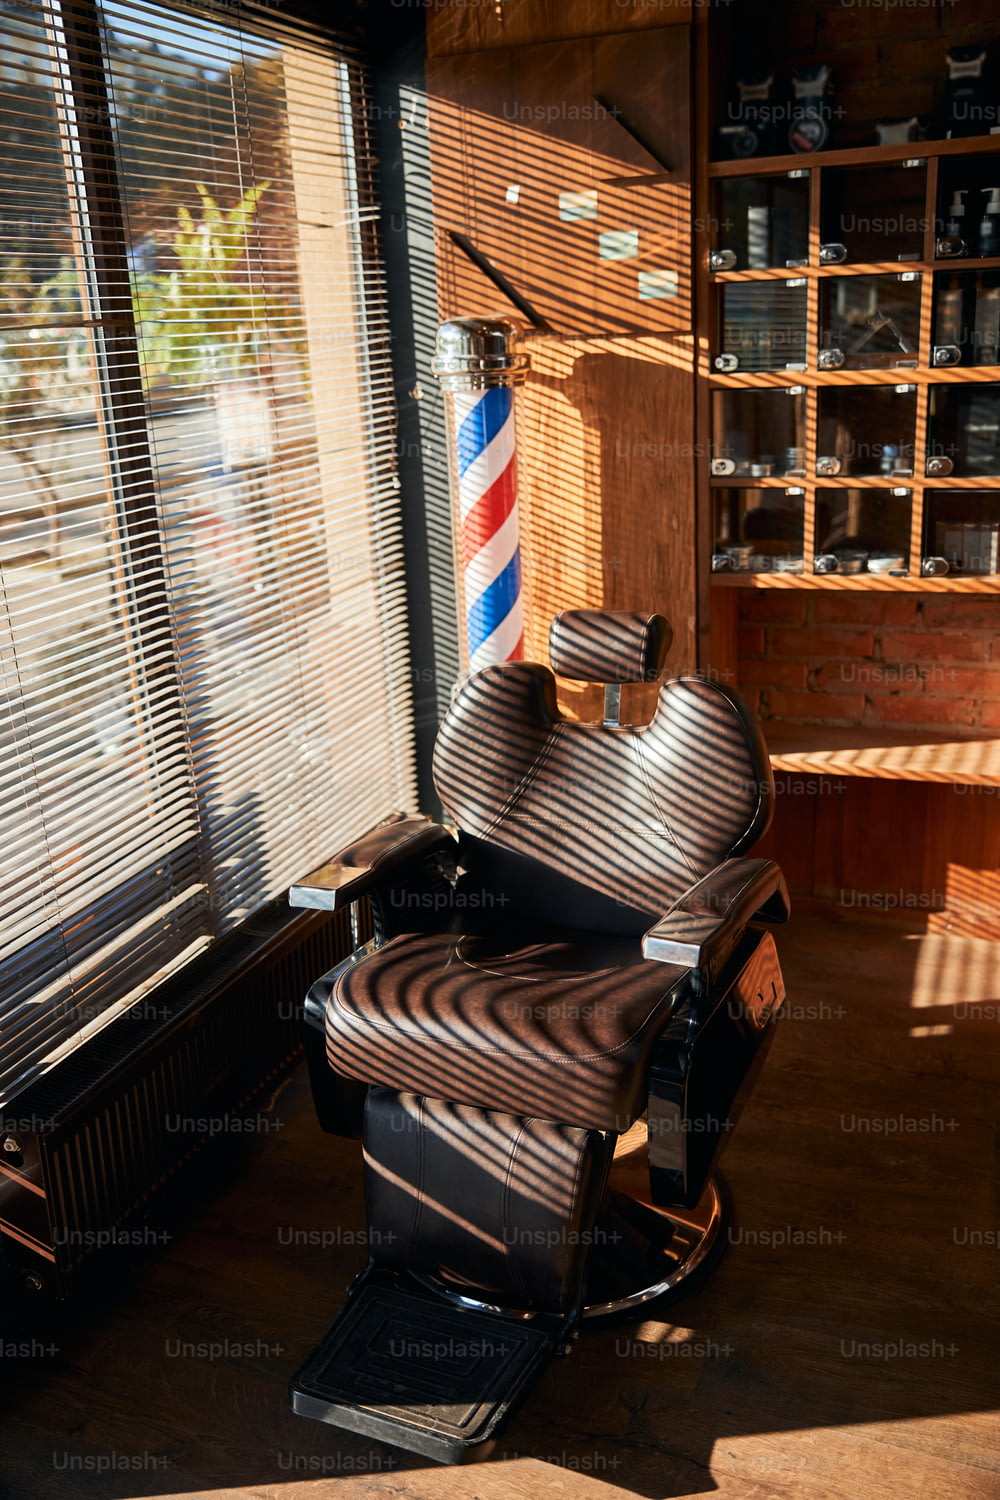 Fauteuil de barbier inclinable en cuir marron avec appui-tête réglable situé près de la fenêtre avec stores